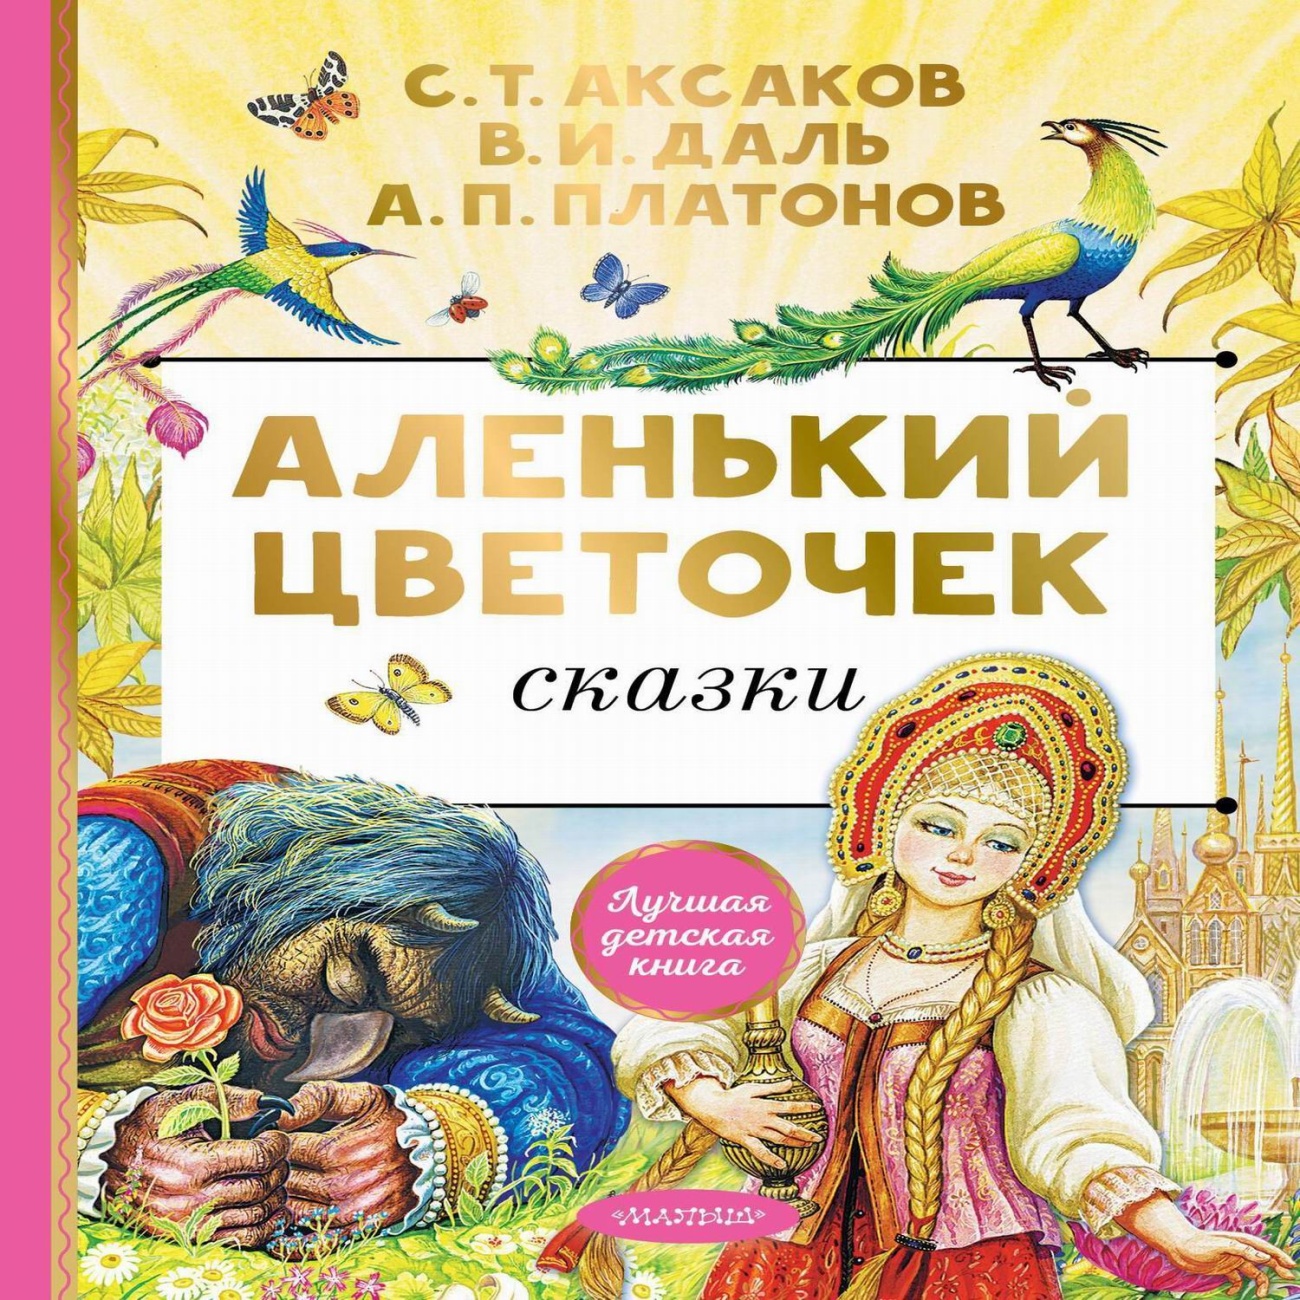 Книга АСТ Аленький цветочек. Сказки 156704-0